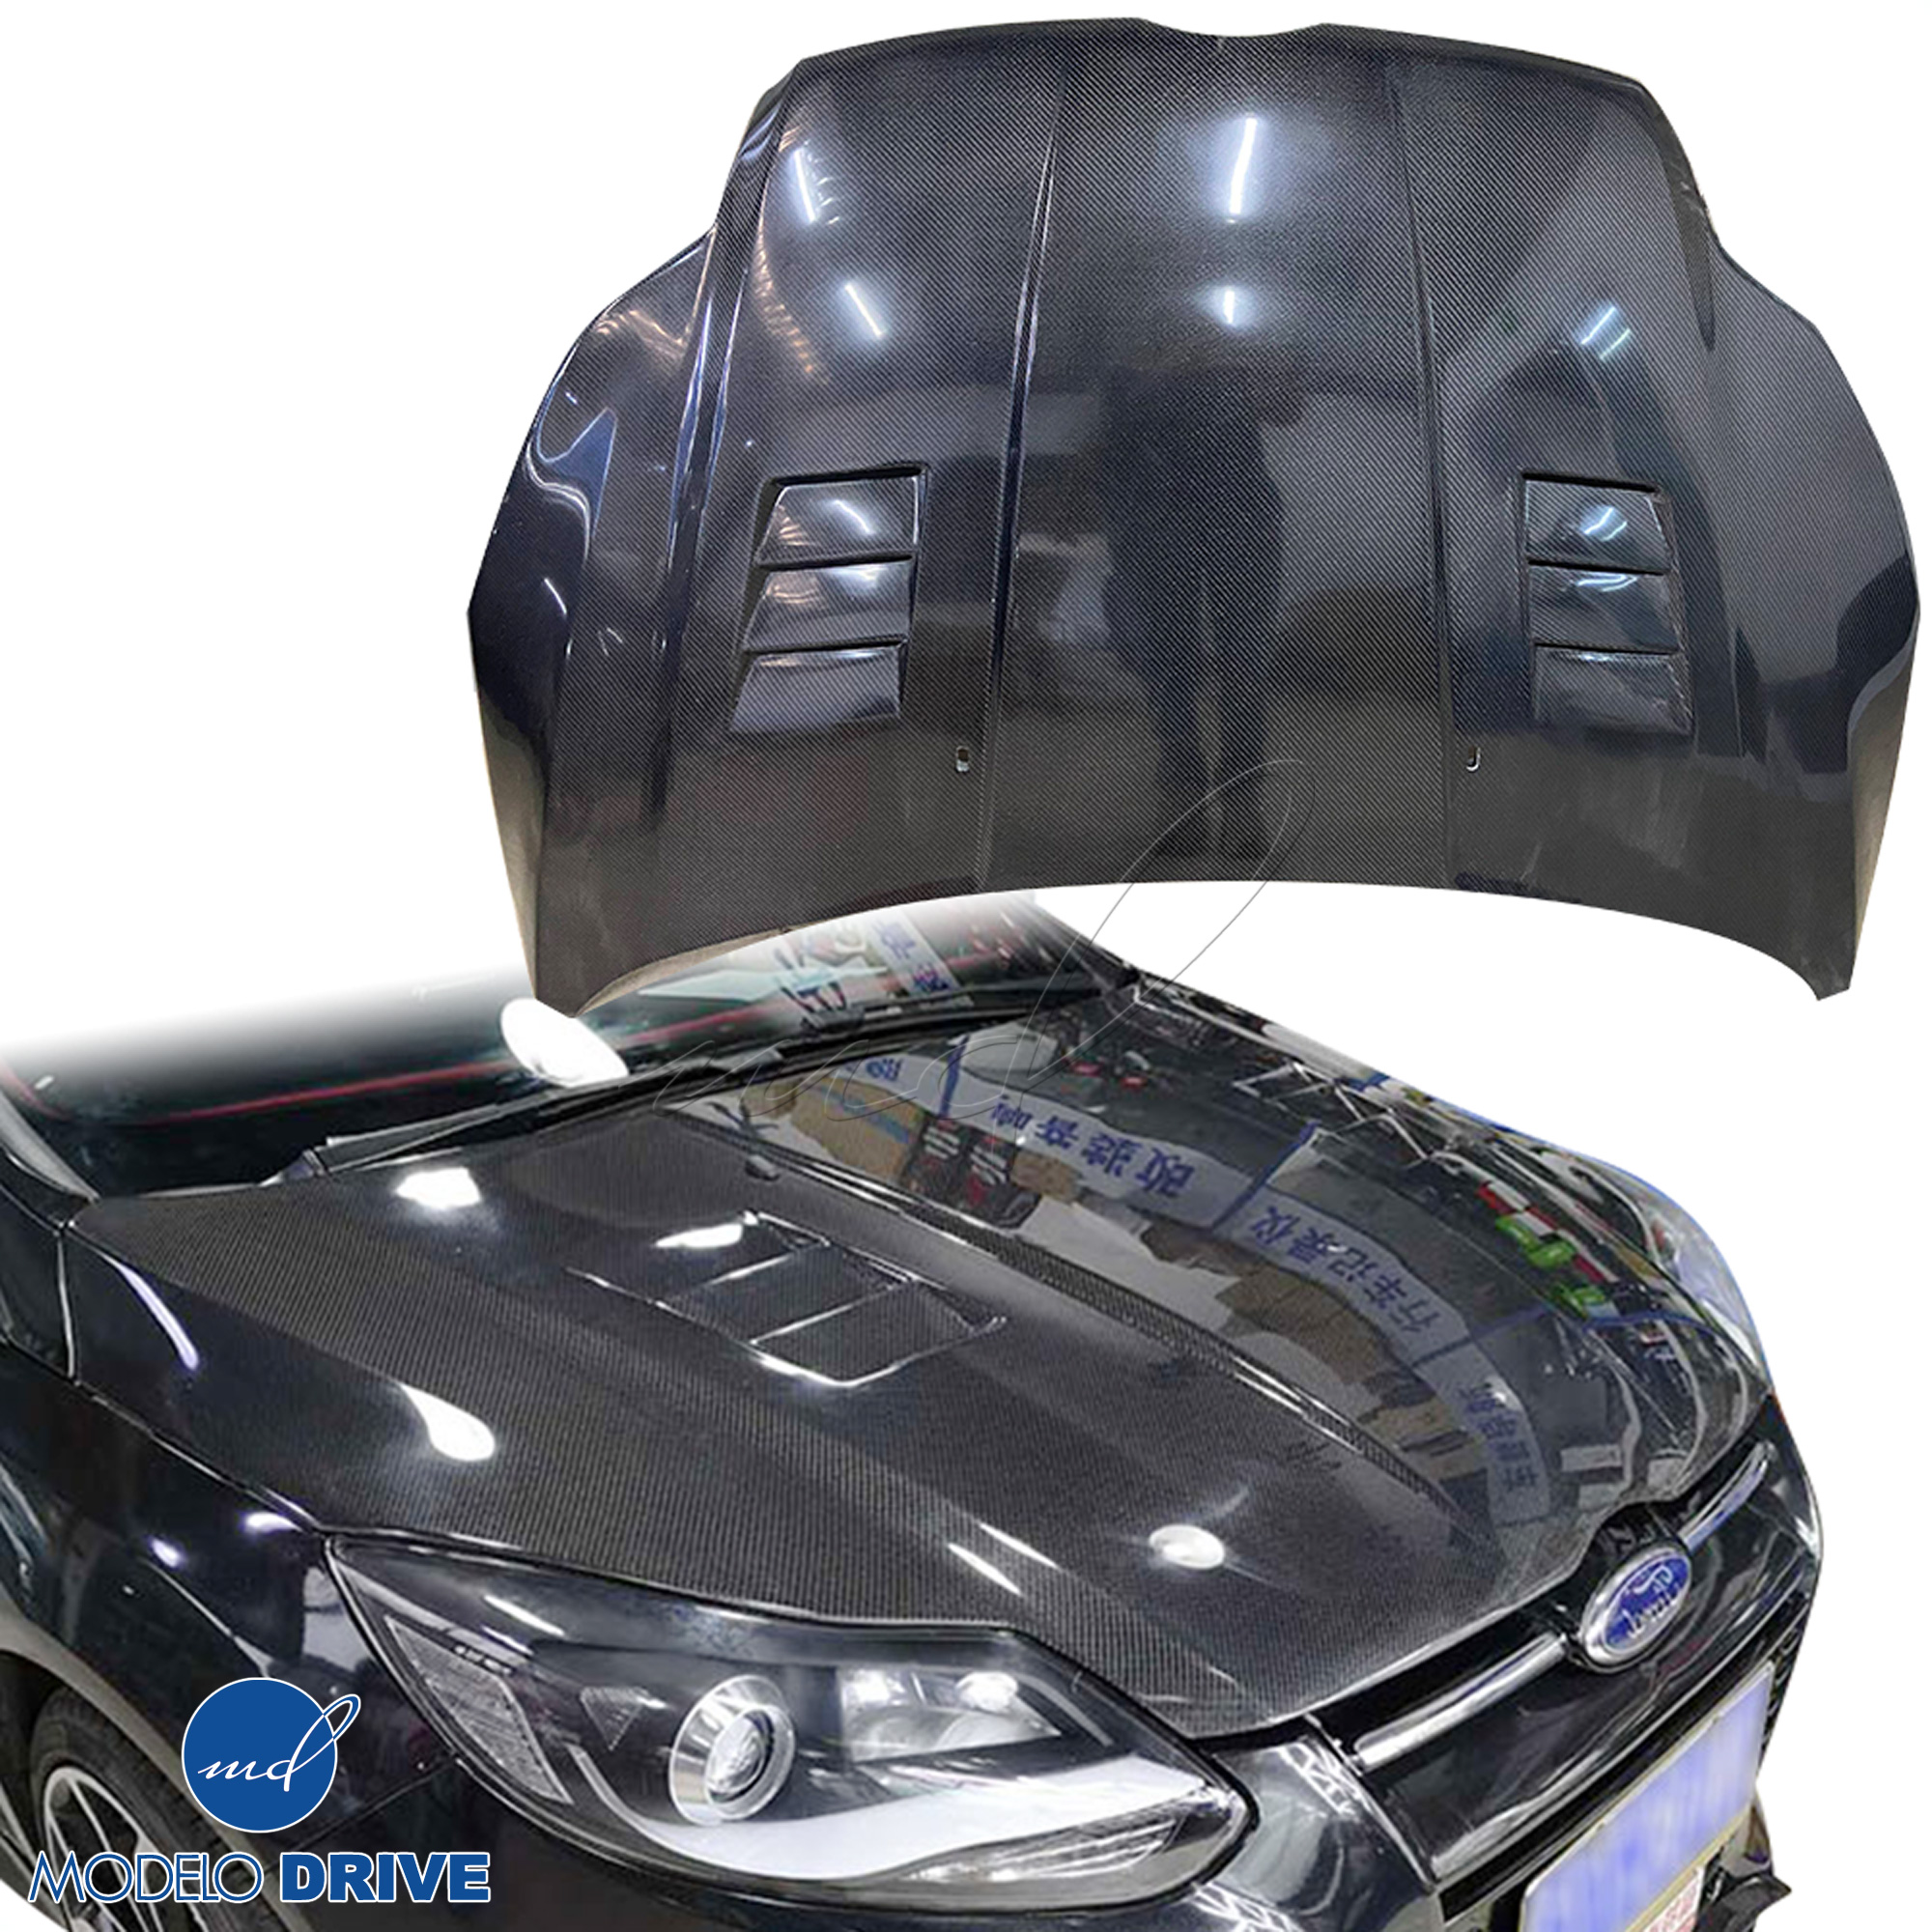 ModeloDrive Carbon Fiber KR Vented Hood > Ford Focus 2012-2014 - Image 1